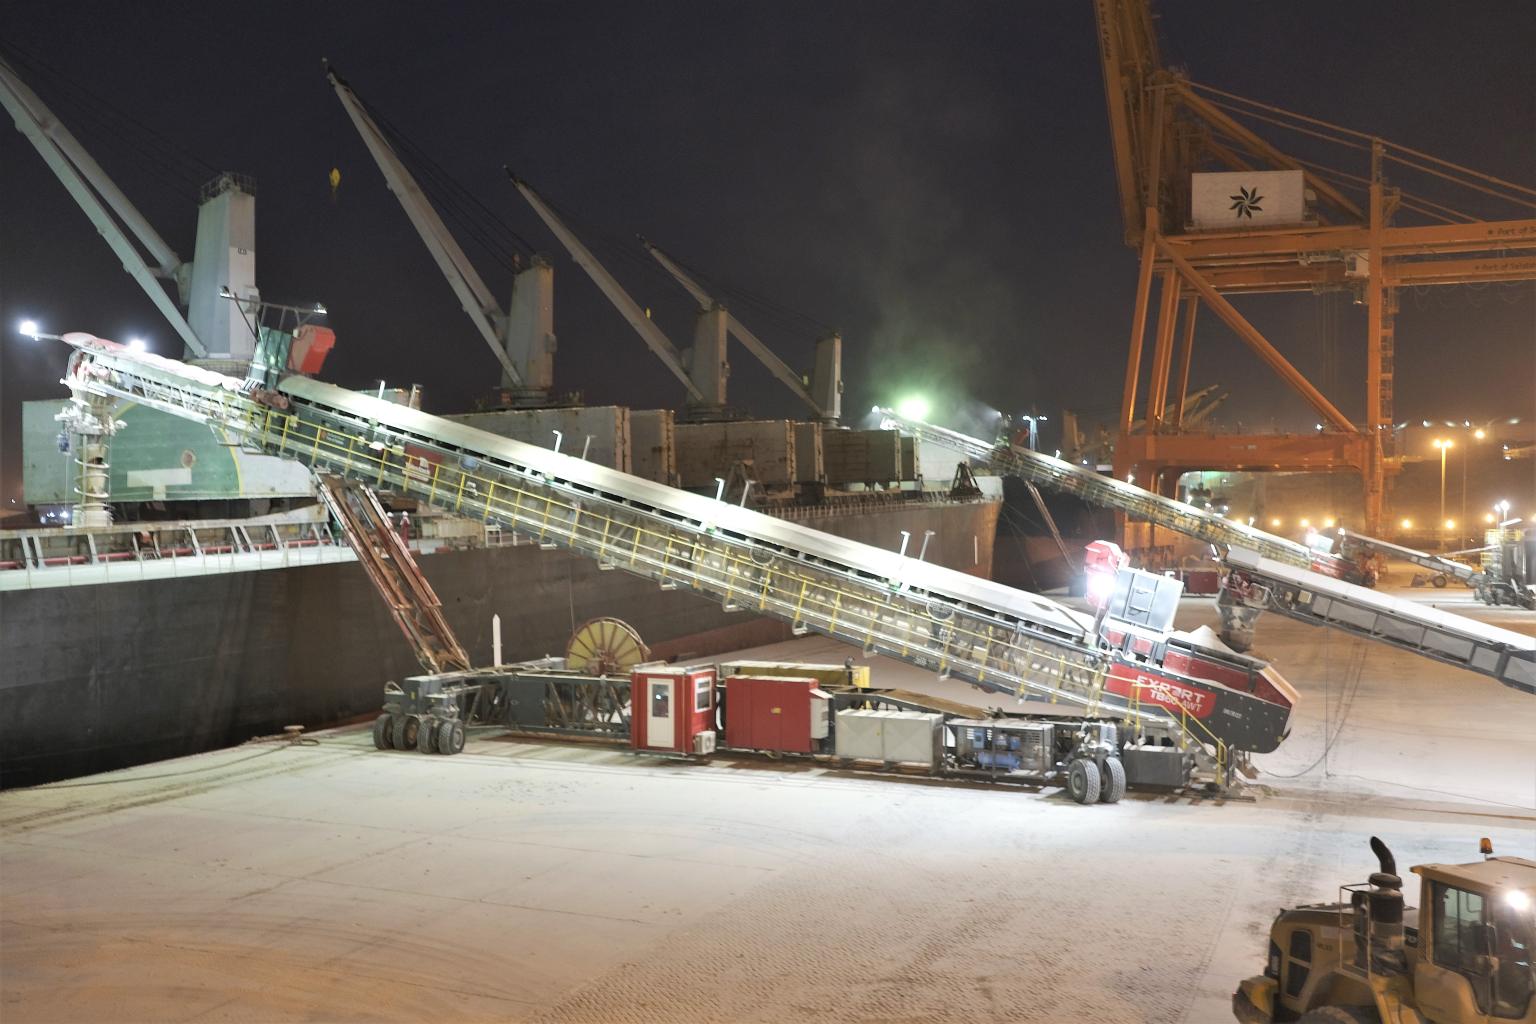 Salalah Port - shiploader operations at night